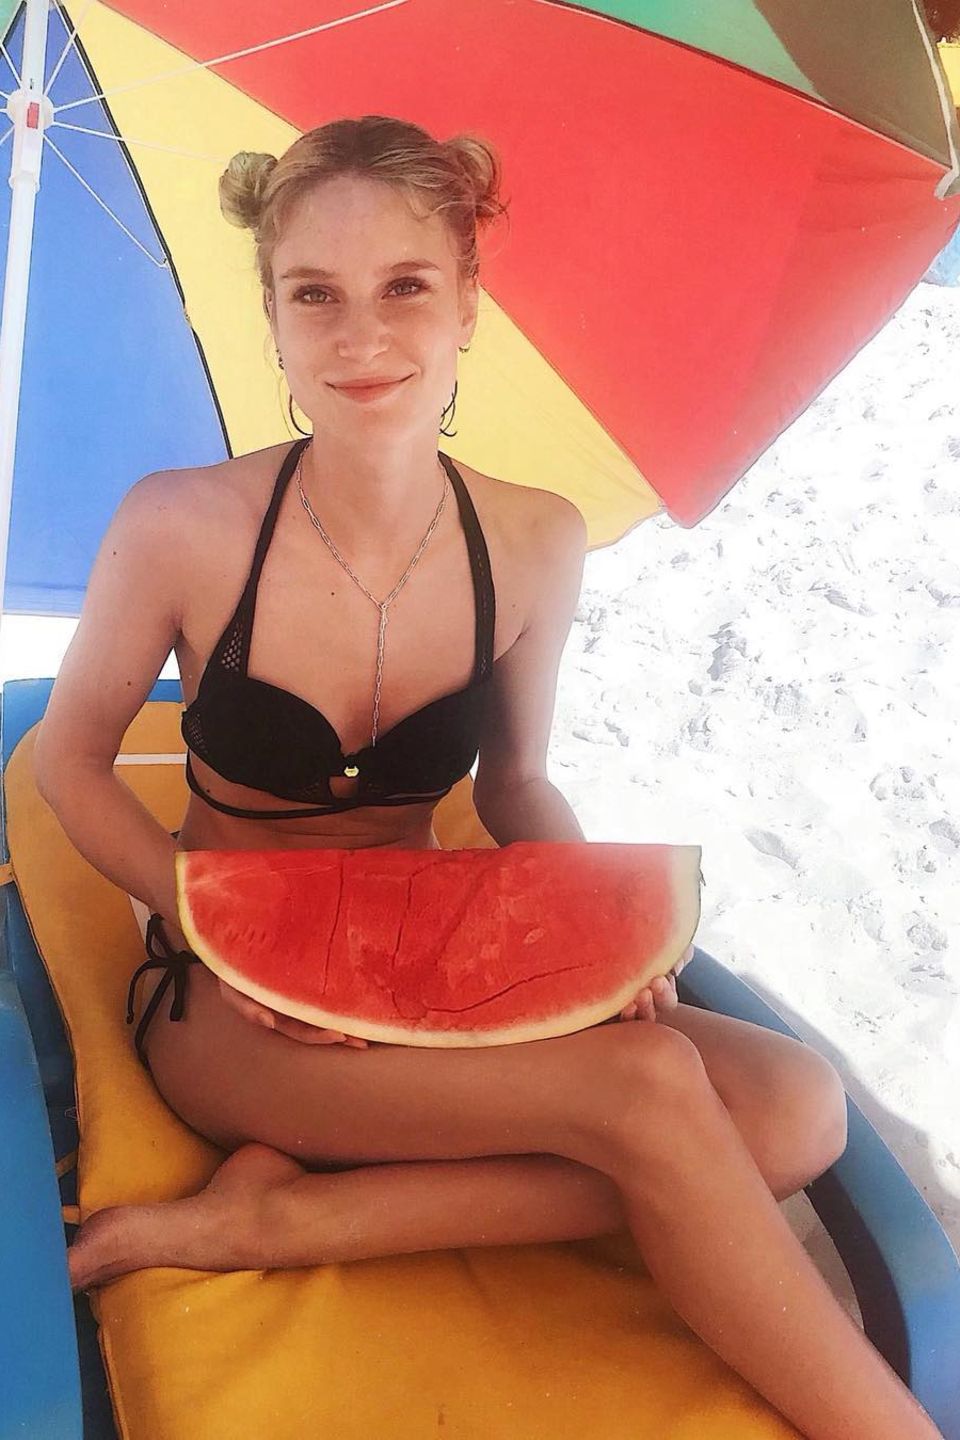 "Ich habe eine Wassermelone getragen!" – ein viel zitierter Satz aus dem Film "Dirty Dancing", der dank dieses Fotos nun auch auf Kim Hnizdo zutrifft. Es zeigt die "Germanys next Topmodel"-Siegerin im Urlaub in Südafrika. Schützend vor der prallen Sonne sitzt Kim unter einem bunten Sonnenschirm im Sand. In ihrer Hand hält sie ein beliebtes Bikini-Food: eine Wassermelone! Als Model weiß sie natürlich genau, welche Lebensmittel ihrer Strandfigur gut tun und so ersetzt sie fettige Pommes zum Mittag durch das kalorien- und fettarme Obst.